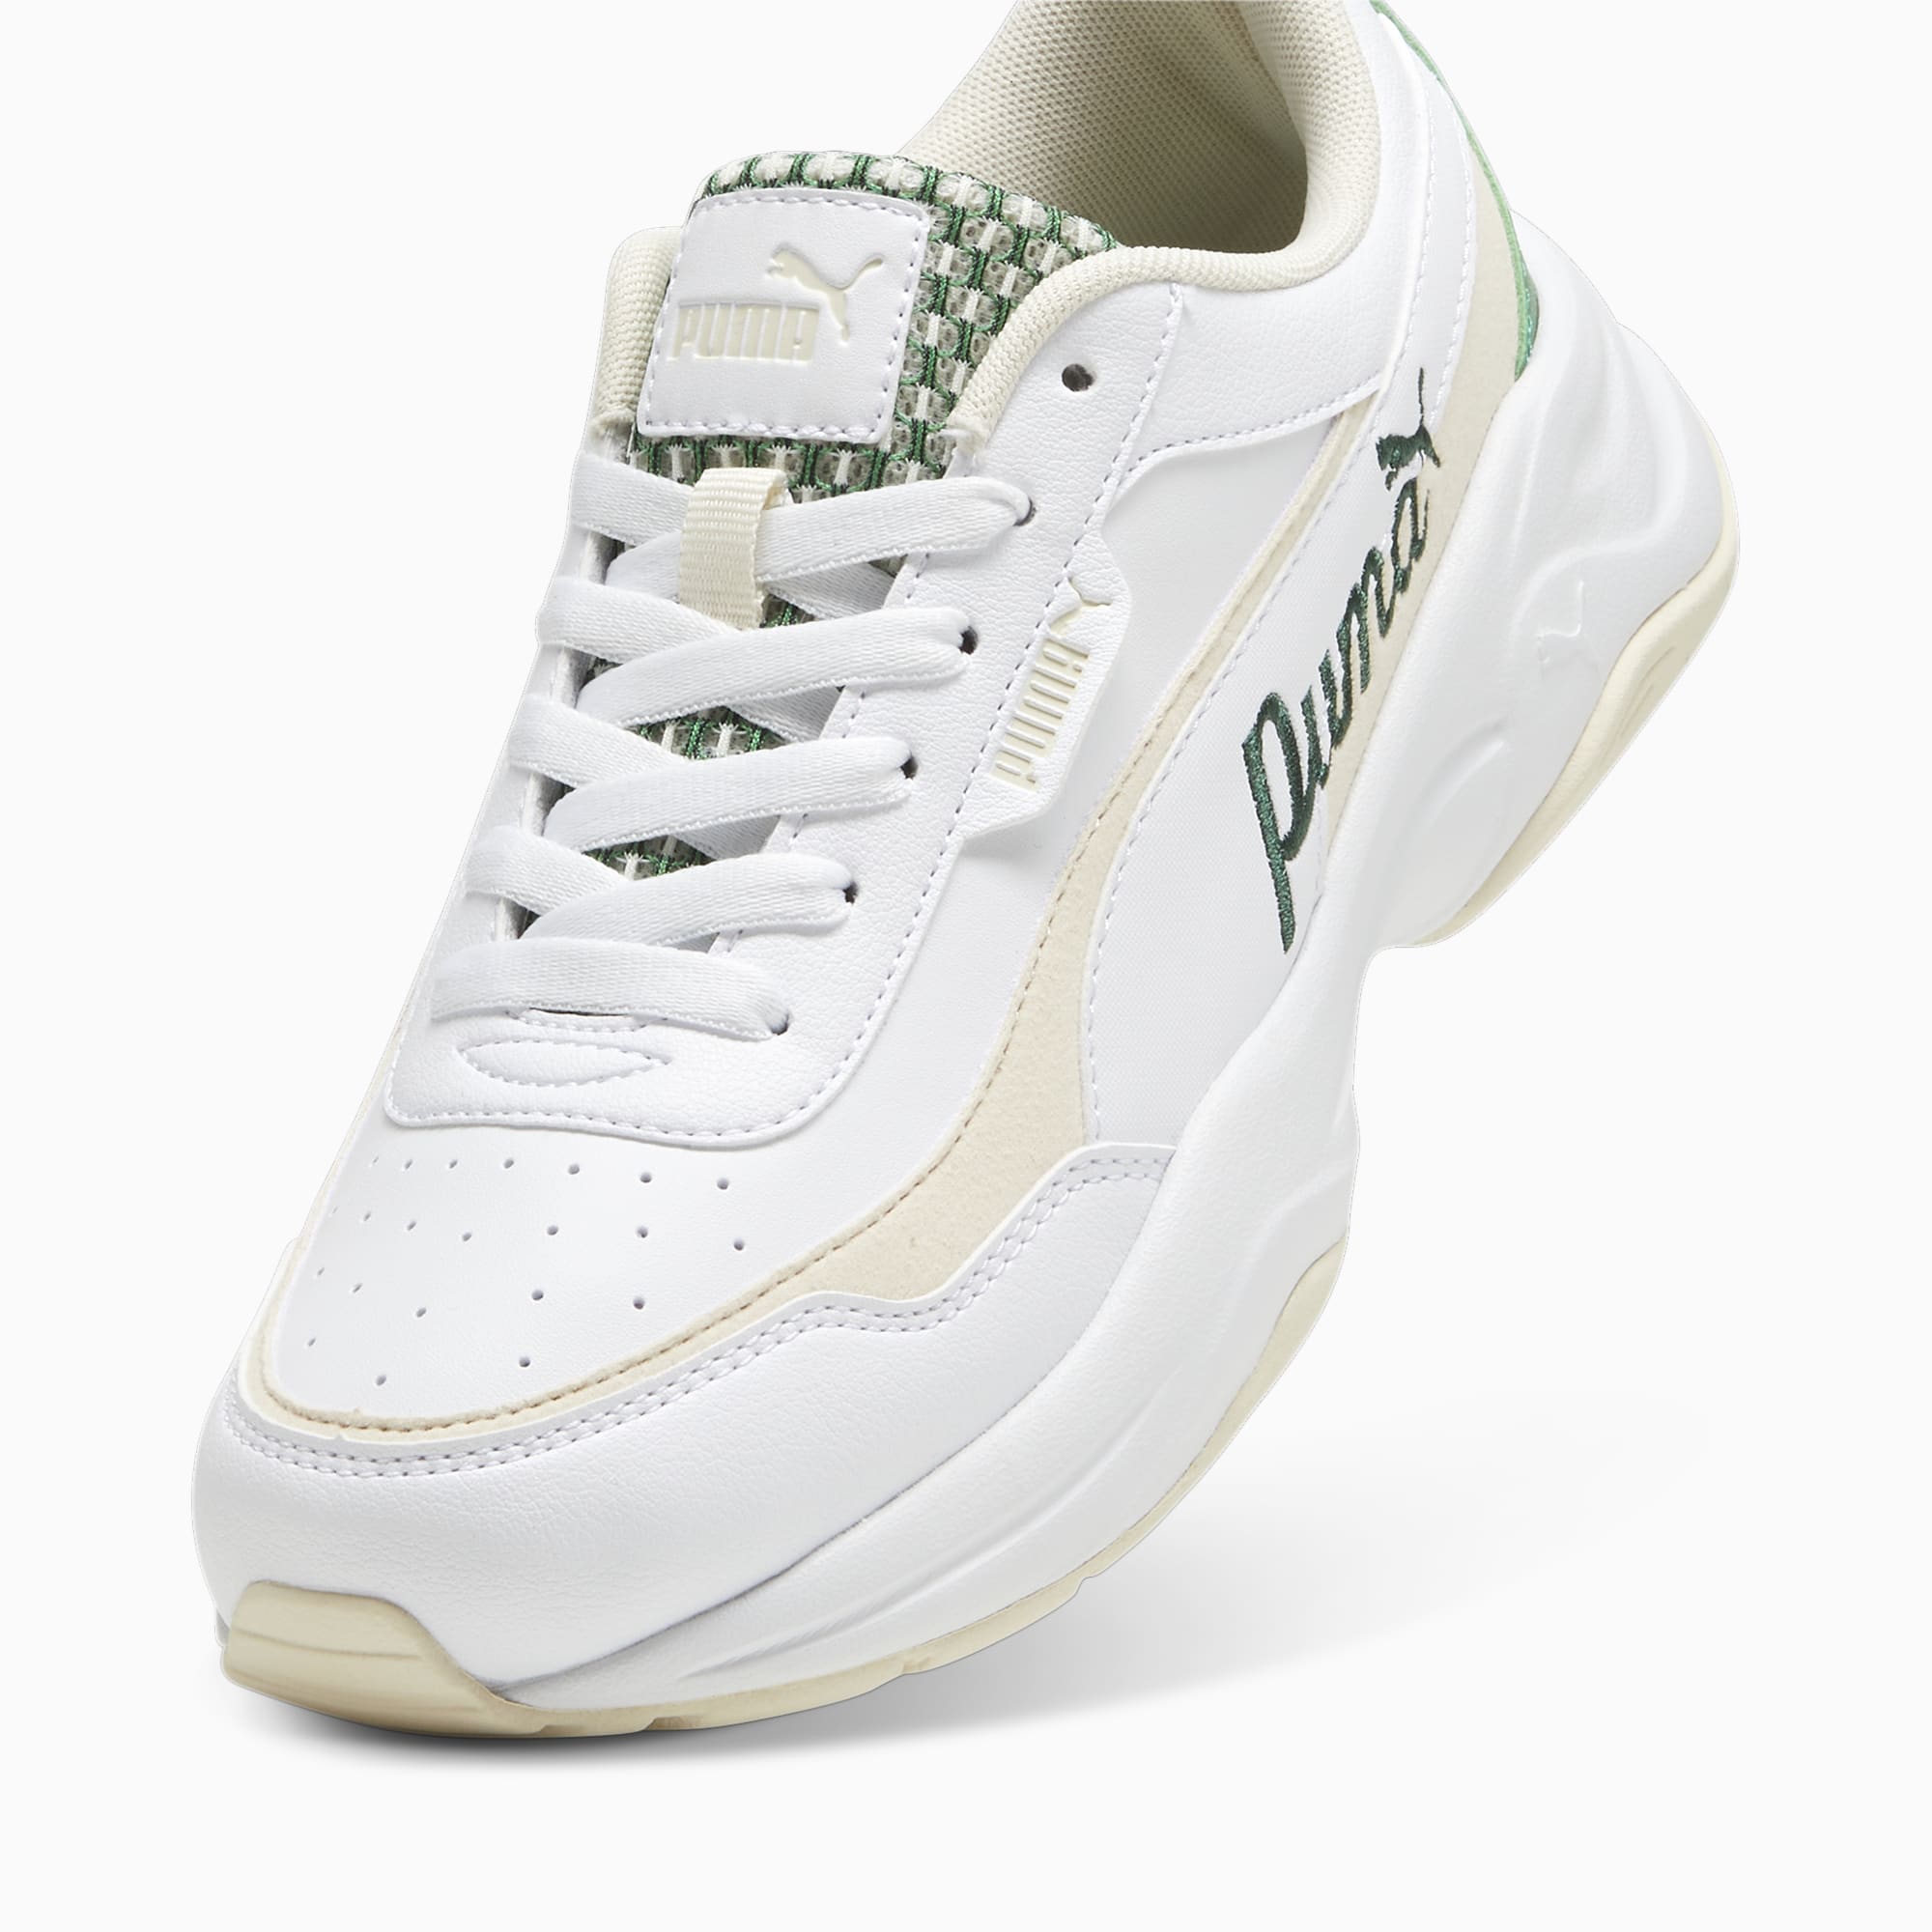 Women's PUMA Cilia Mode Blossom Sneakers, White/Sugared Almond/Pure Green